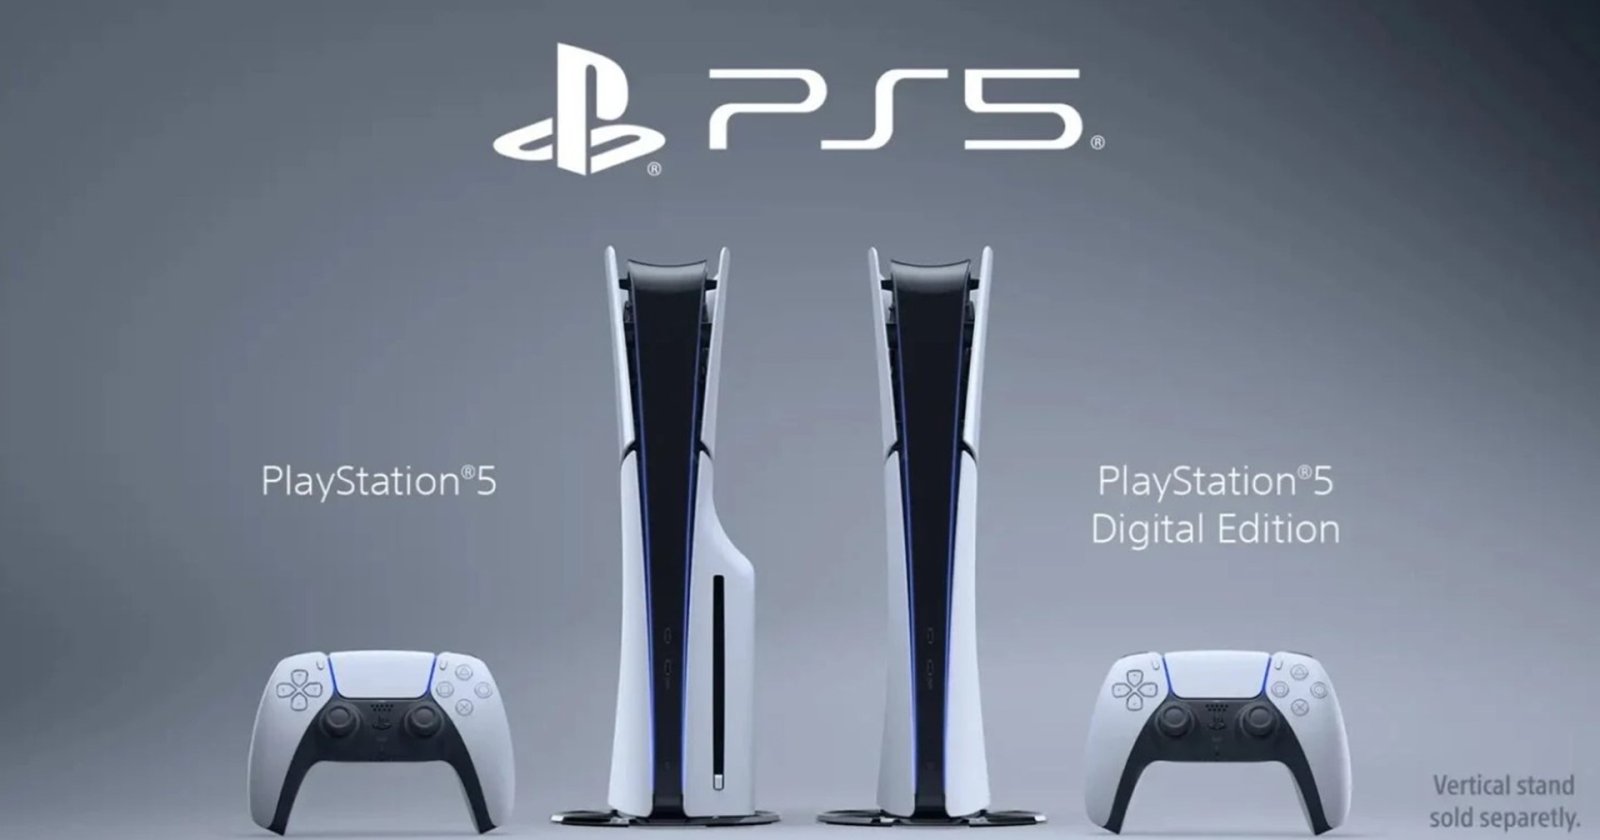 ยืนยัน PlayStation 5 Slim ต้องออนไลน์เพื่อเชื่อมต่อ “ดิสก์ไดรฟ์” จริง